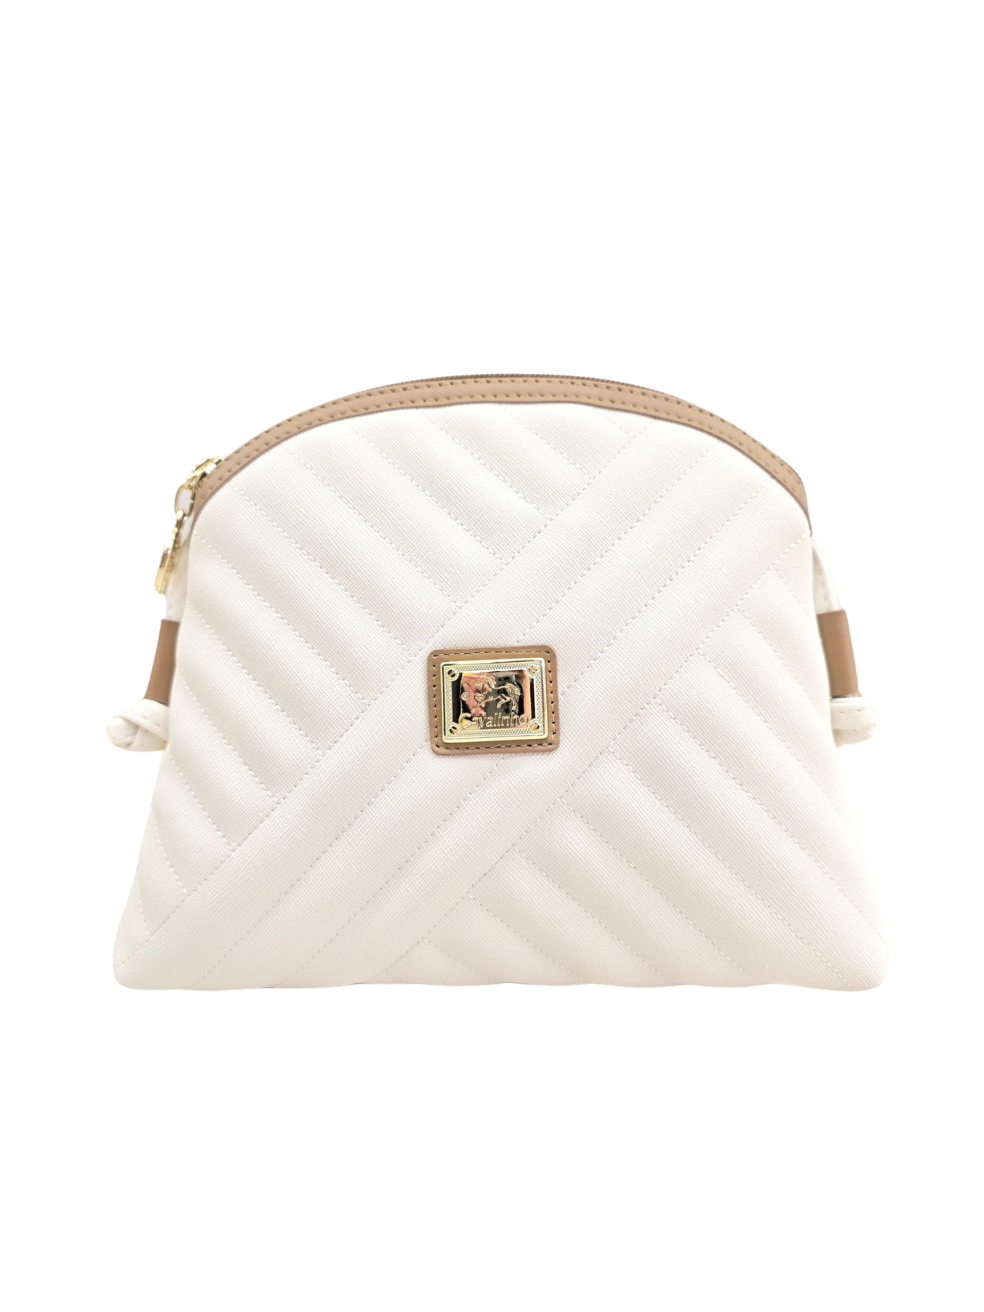 Cavalinho Charming Crossbody Bag SKU 18470005.38 #color_white / sand